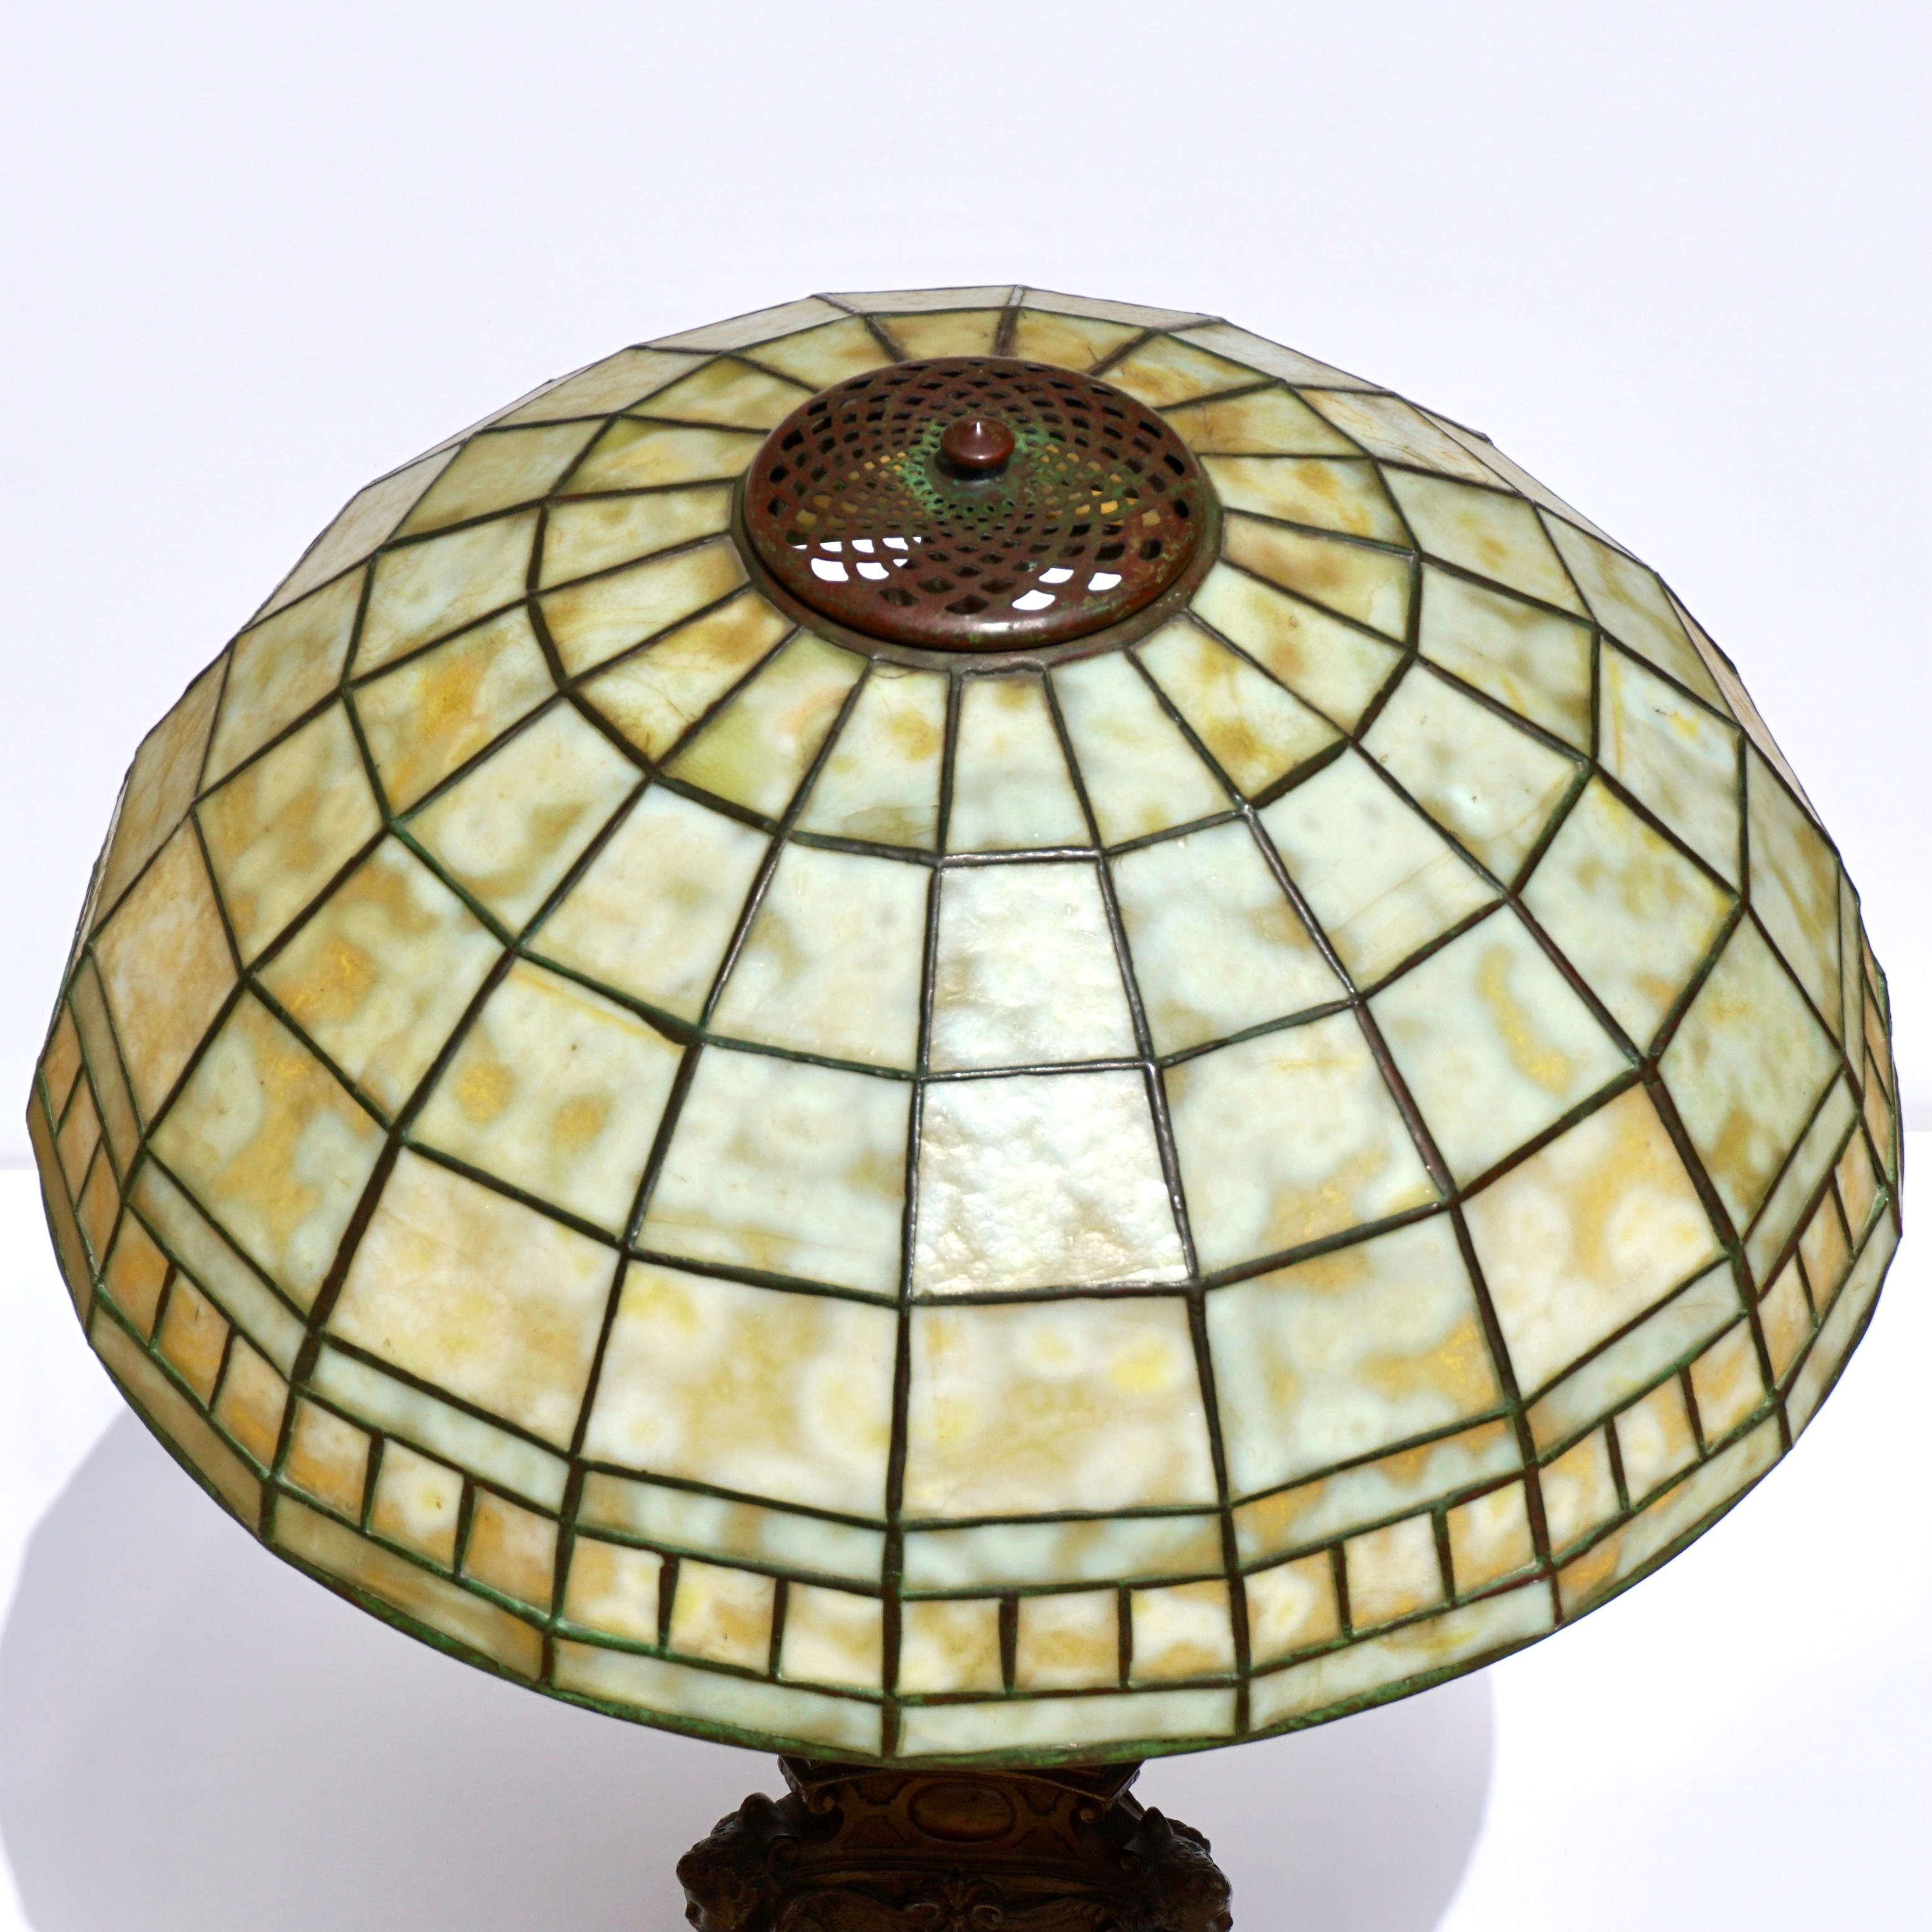 Art Nouveau Tiffany Studios Colonial Table Lamp For Sale